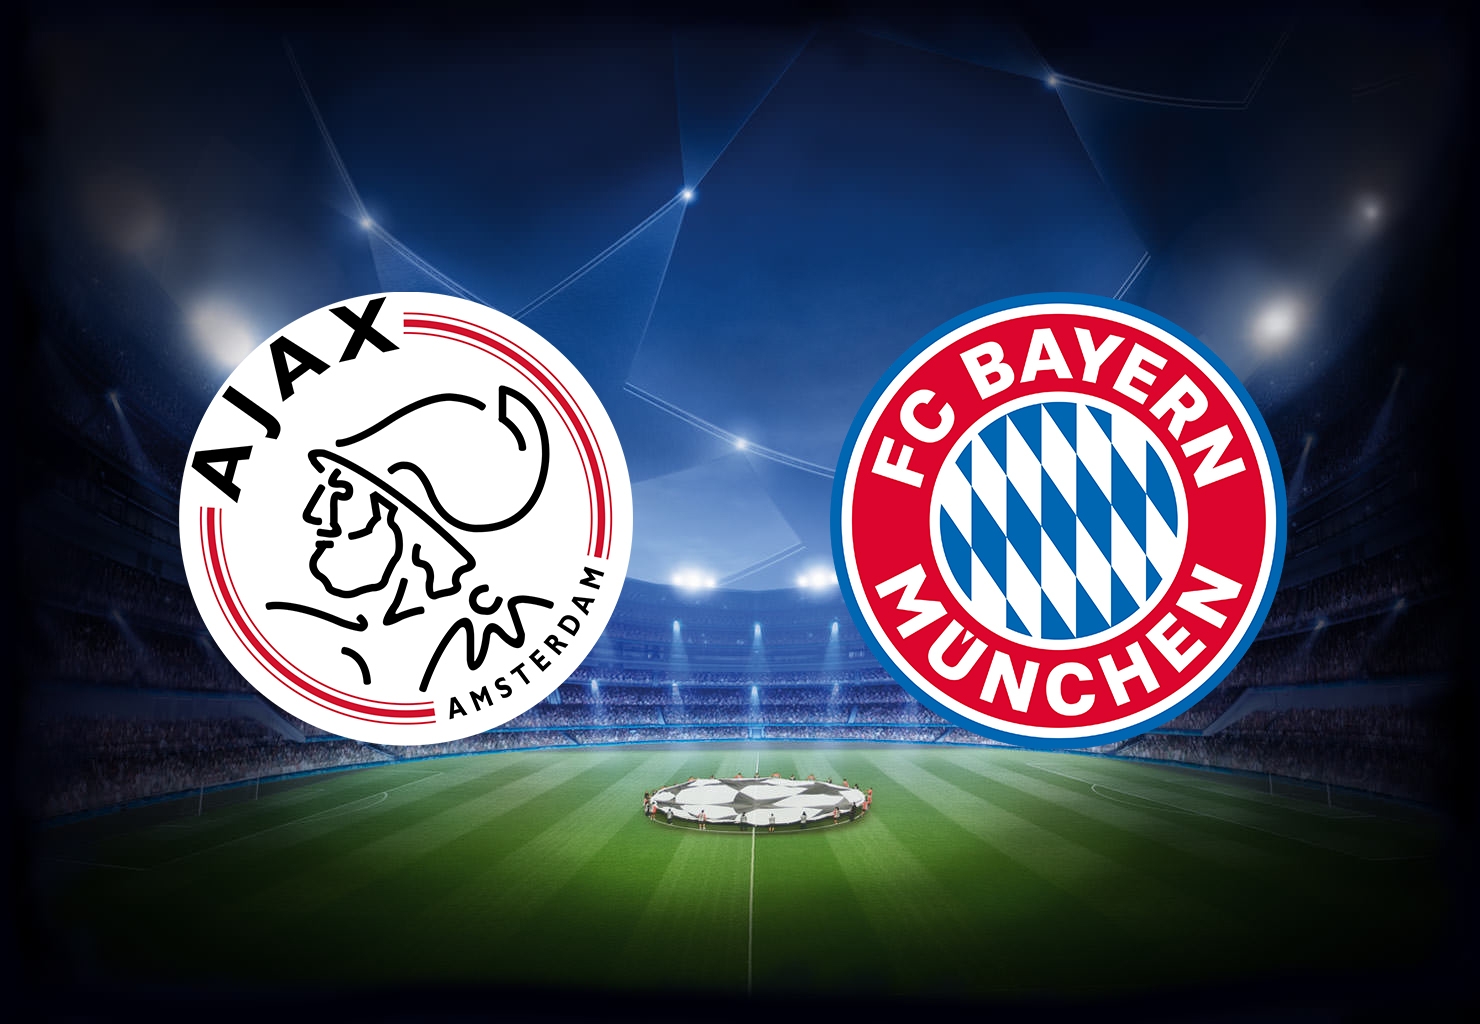 Xem trực tiếp bóng đá Ajax vs Bayern (C1 châu Âu), 3h ngày 13/12